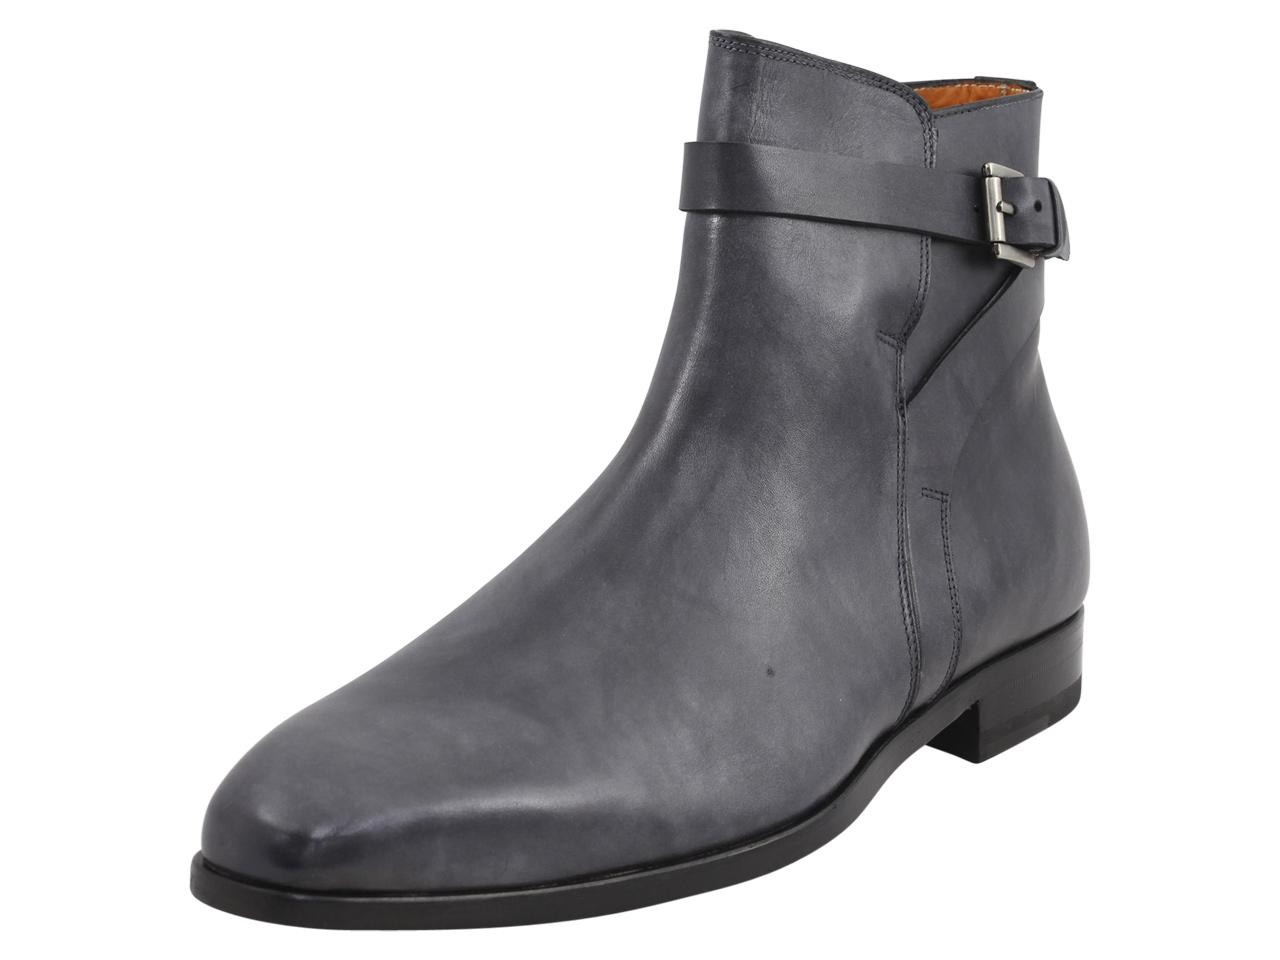 Mezlan Men's Viso Leather Ankle Boots Shoes - Black - 13 D(M) US